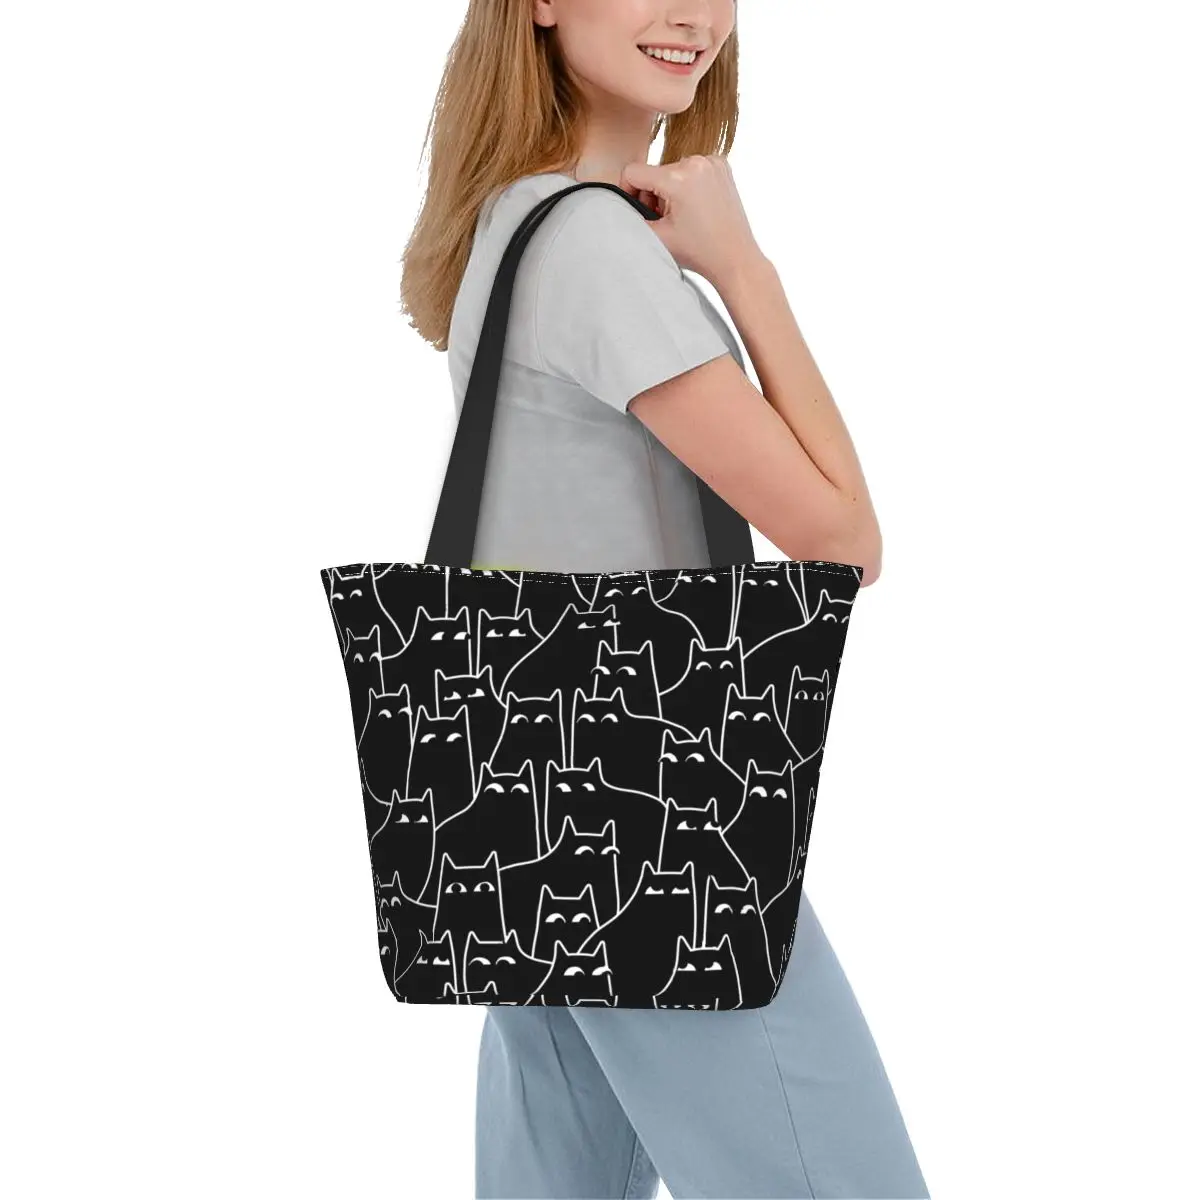 

Сумка для покупок с рисунком подозрительных кошек, забавные сумки для любителей колледжа, женская сумка через плечо с принтом, крутая Сумка-тоут из полиэстера